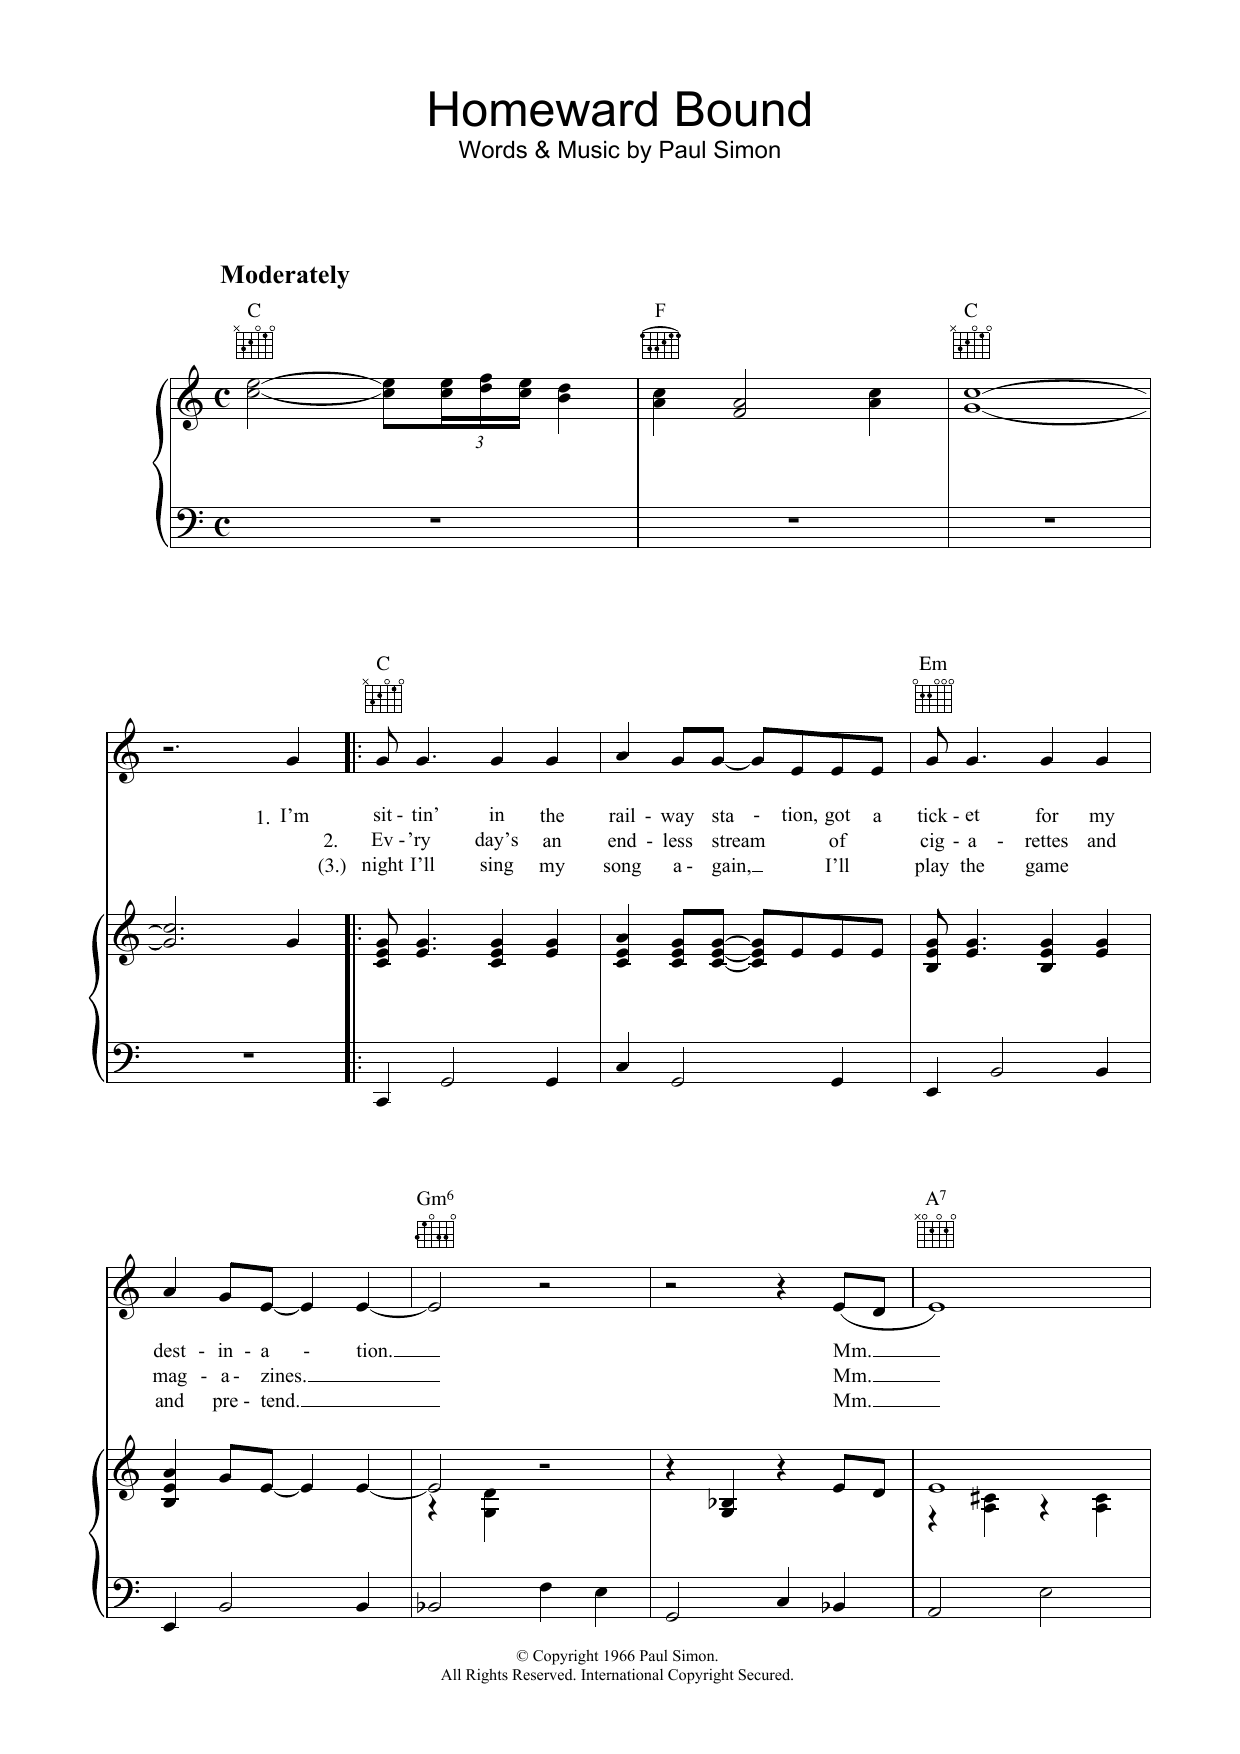 Simon & Garfunkel Homeward Bound Sheet Music Notes & Chords for Ukulele with strumming patterns - Download or Print PDF